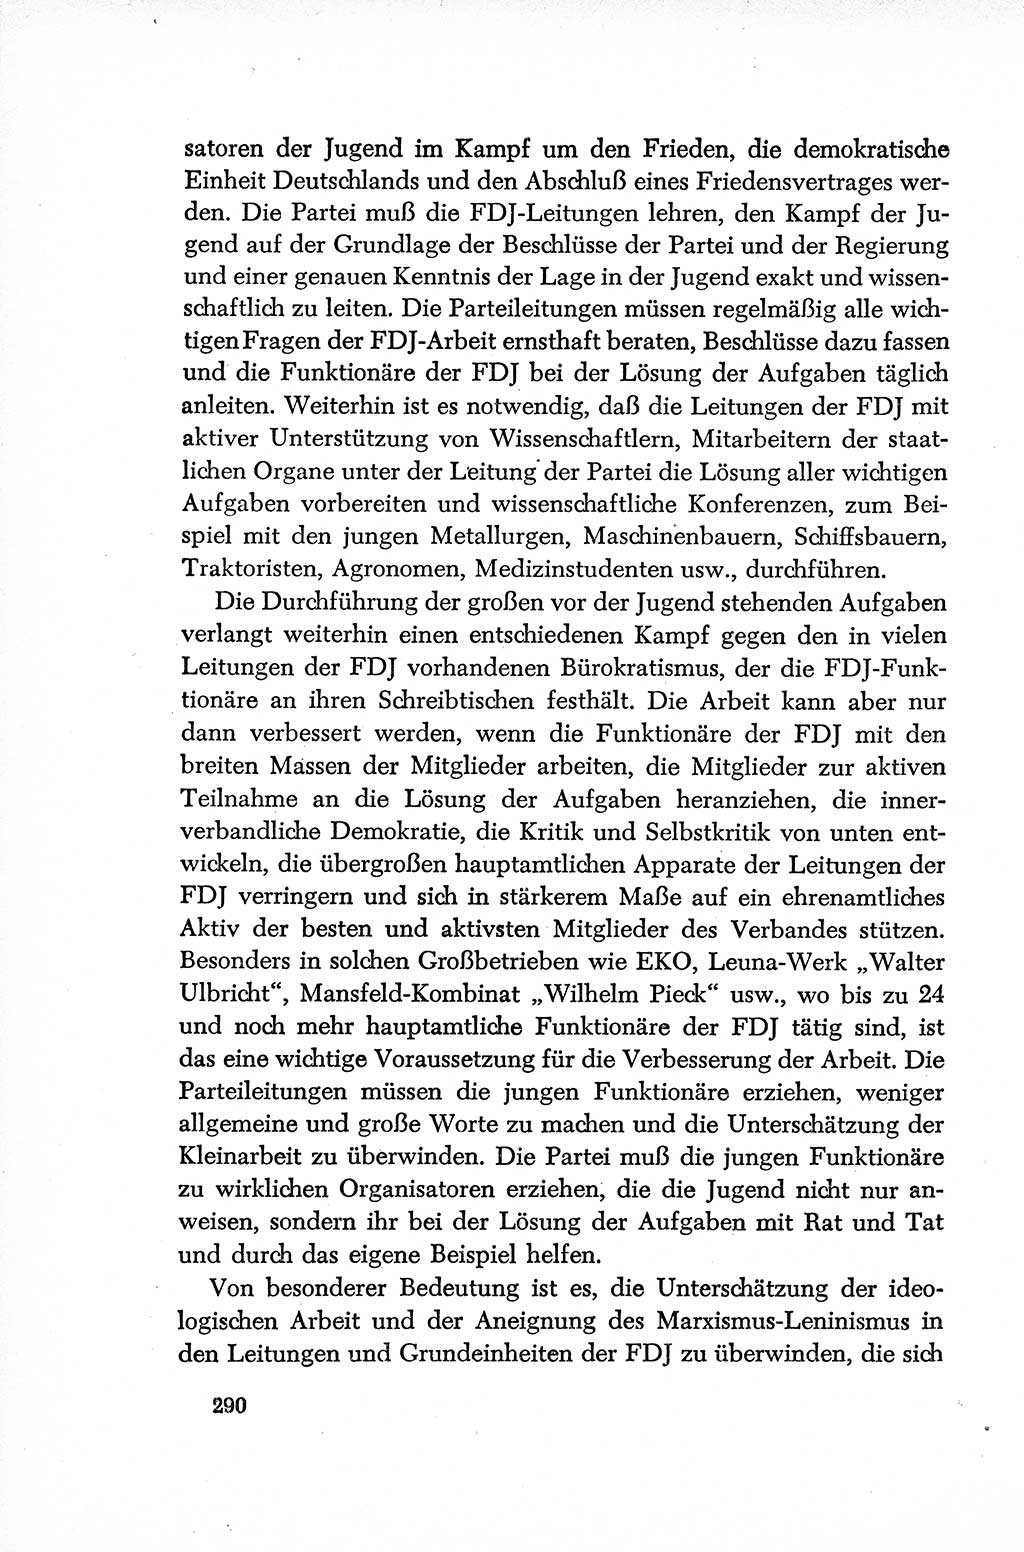 Dokumente der Sozialistischen Einheitspartei Deutschlands (SED) [Deutsche Demokratische Republik (DDR)] 1952-1953, Seite 290 (Dok. SED DDR 1952-1953, S. 290)